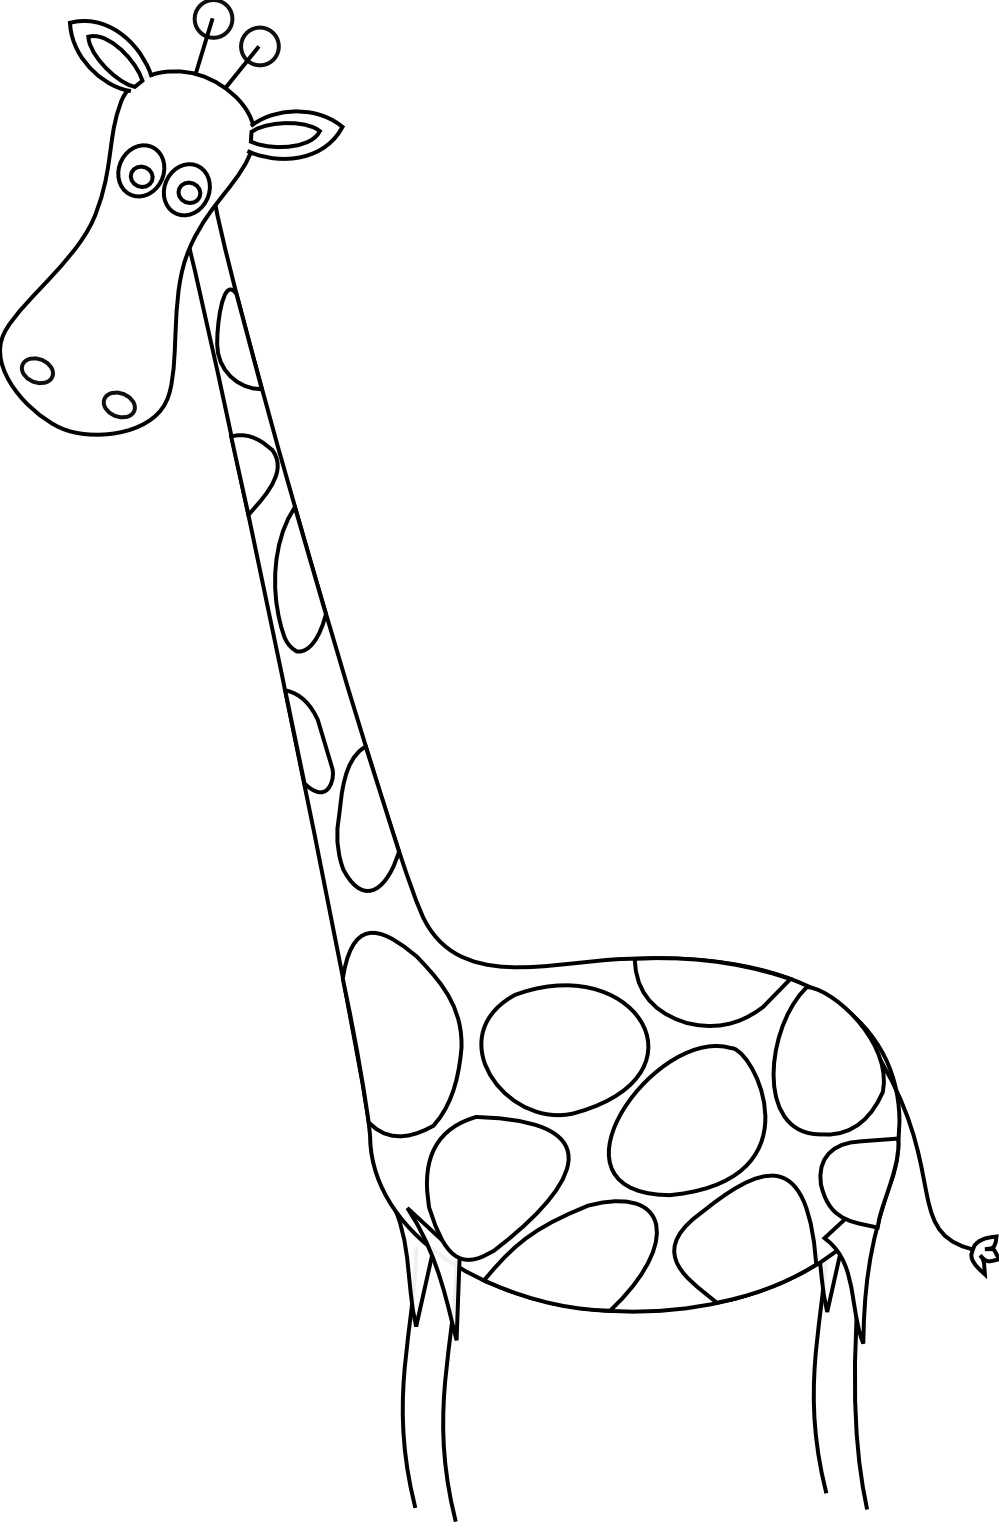 На рисунке изображен жираф. Жираф раскраска для детей. Жирафик раскраска для детей. Трафарет жирафа для рисования для детей. Контур жирафа для детей.